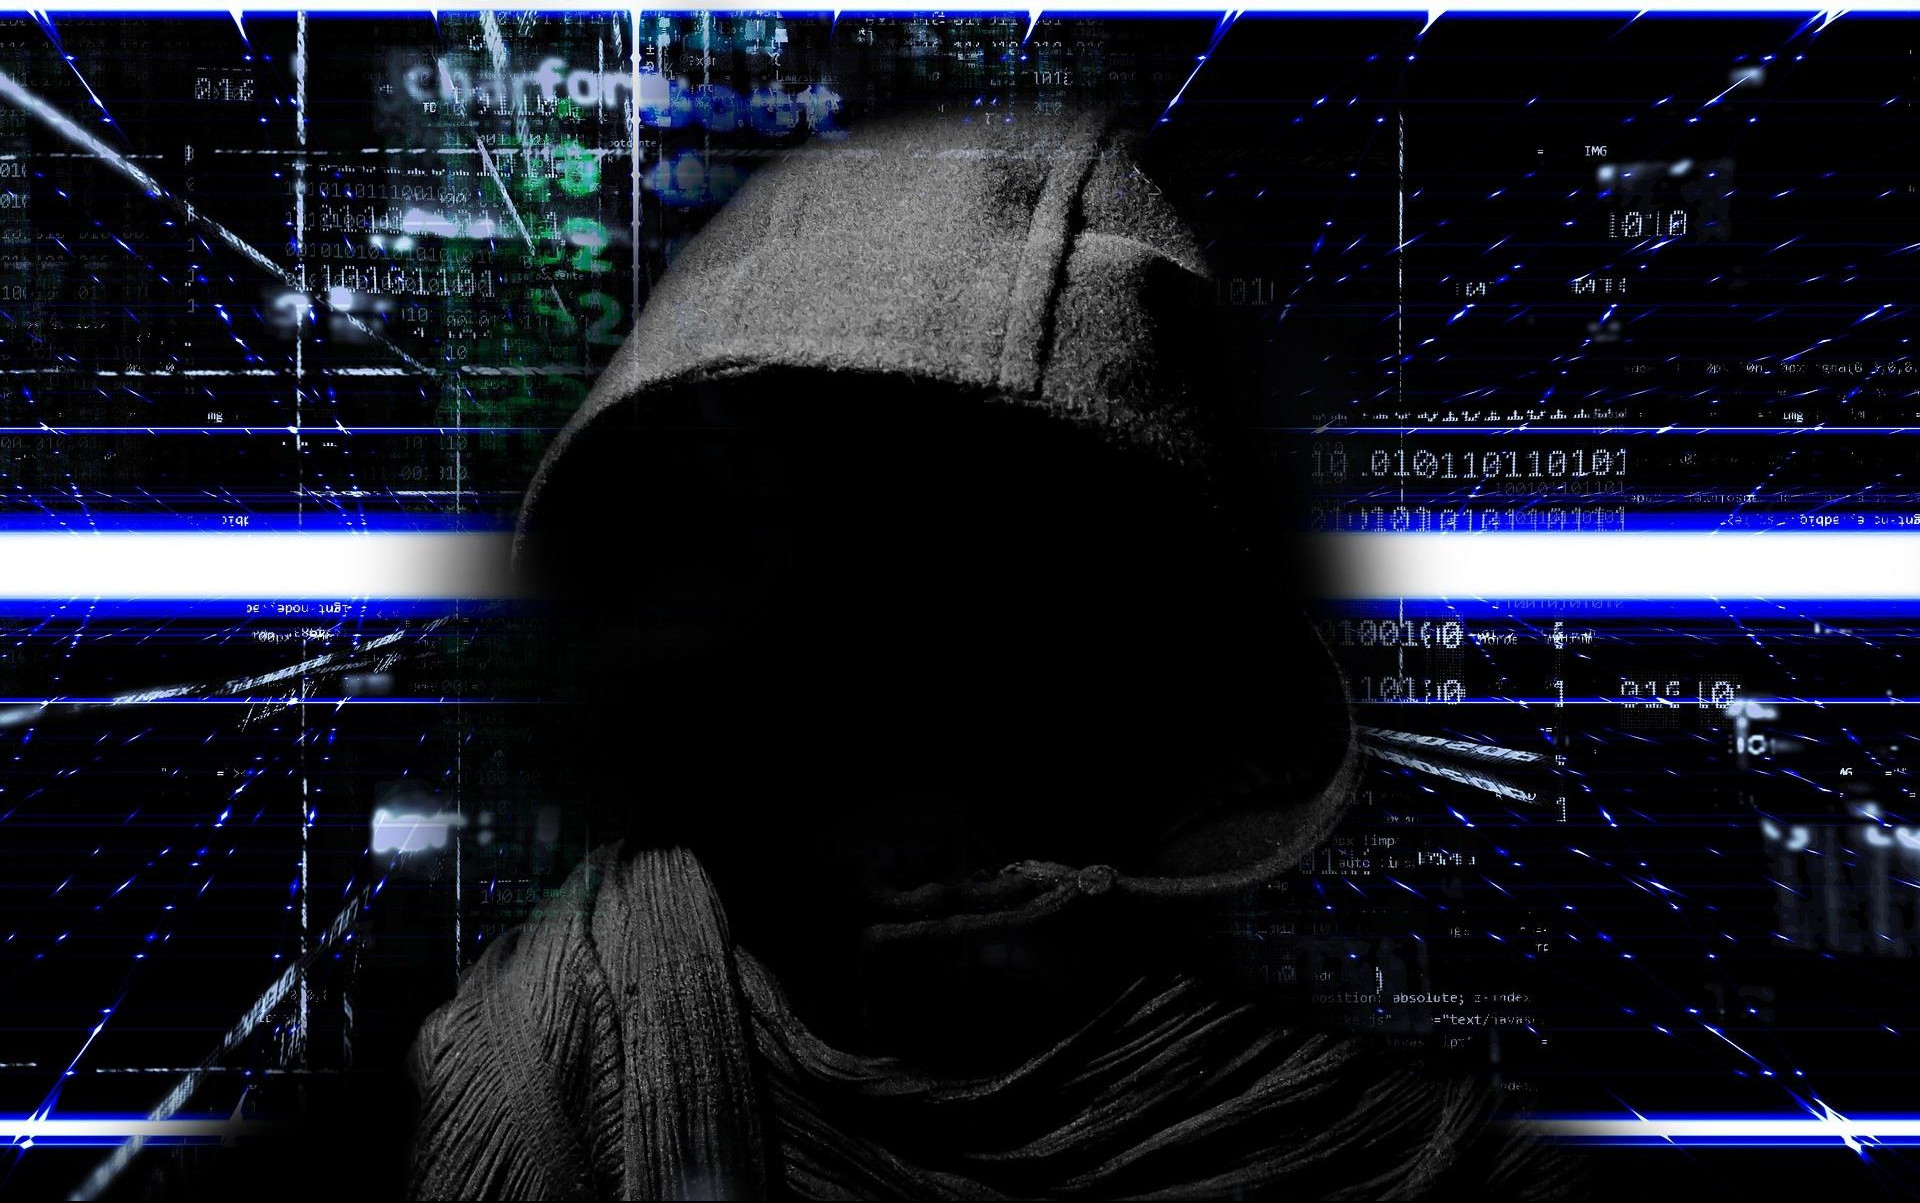 TERORISTA AL KAIDE  I SRPSKI BEZBEDNJAK ZAVIRILI U DARKNET: Tamna strana interneta je carstvo Al Kaide, dečje pornografije, terorista, hakera, ubica!